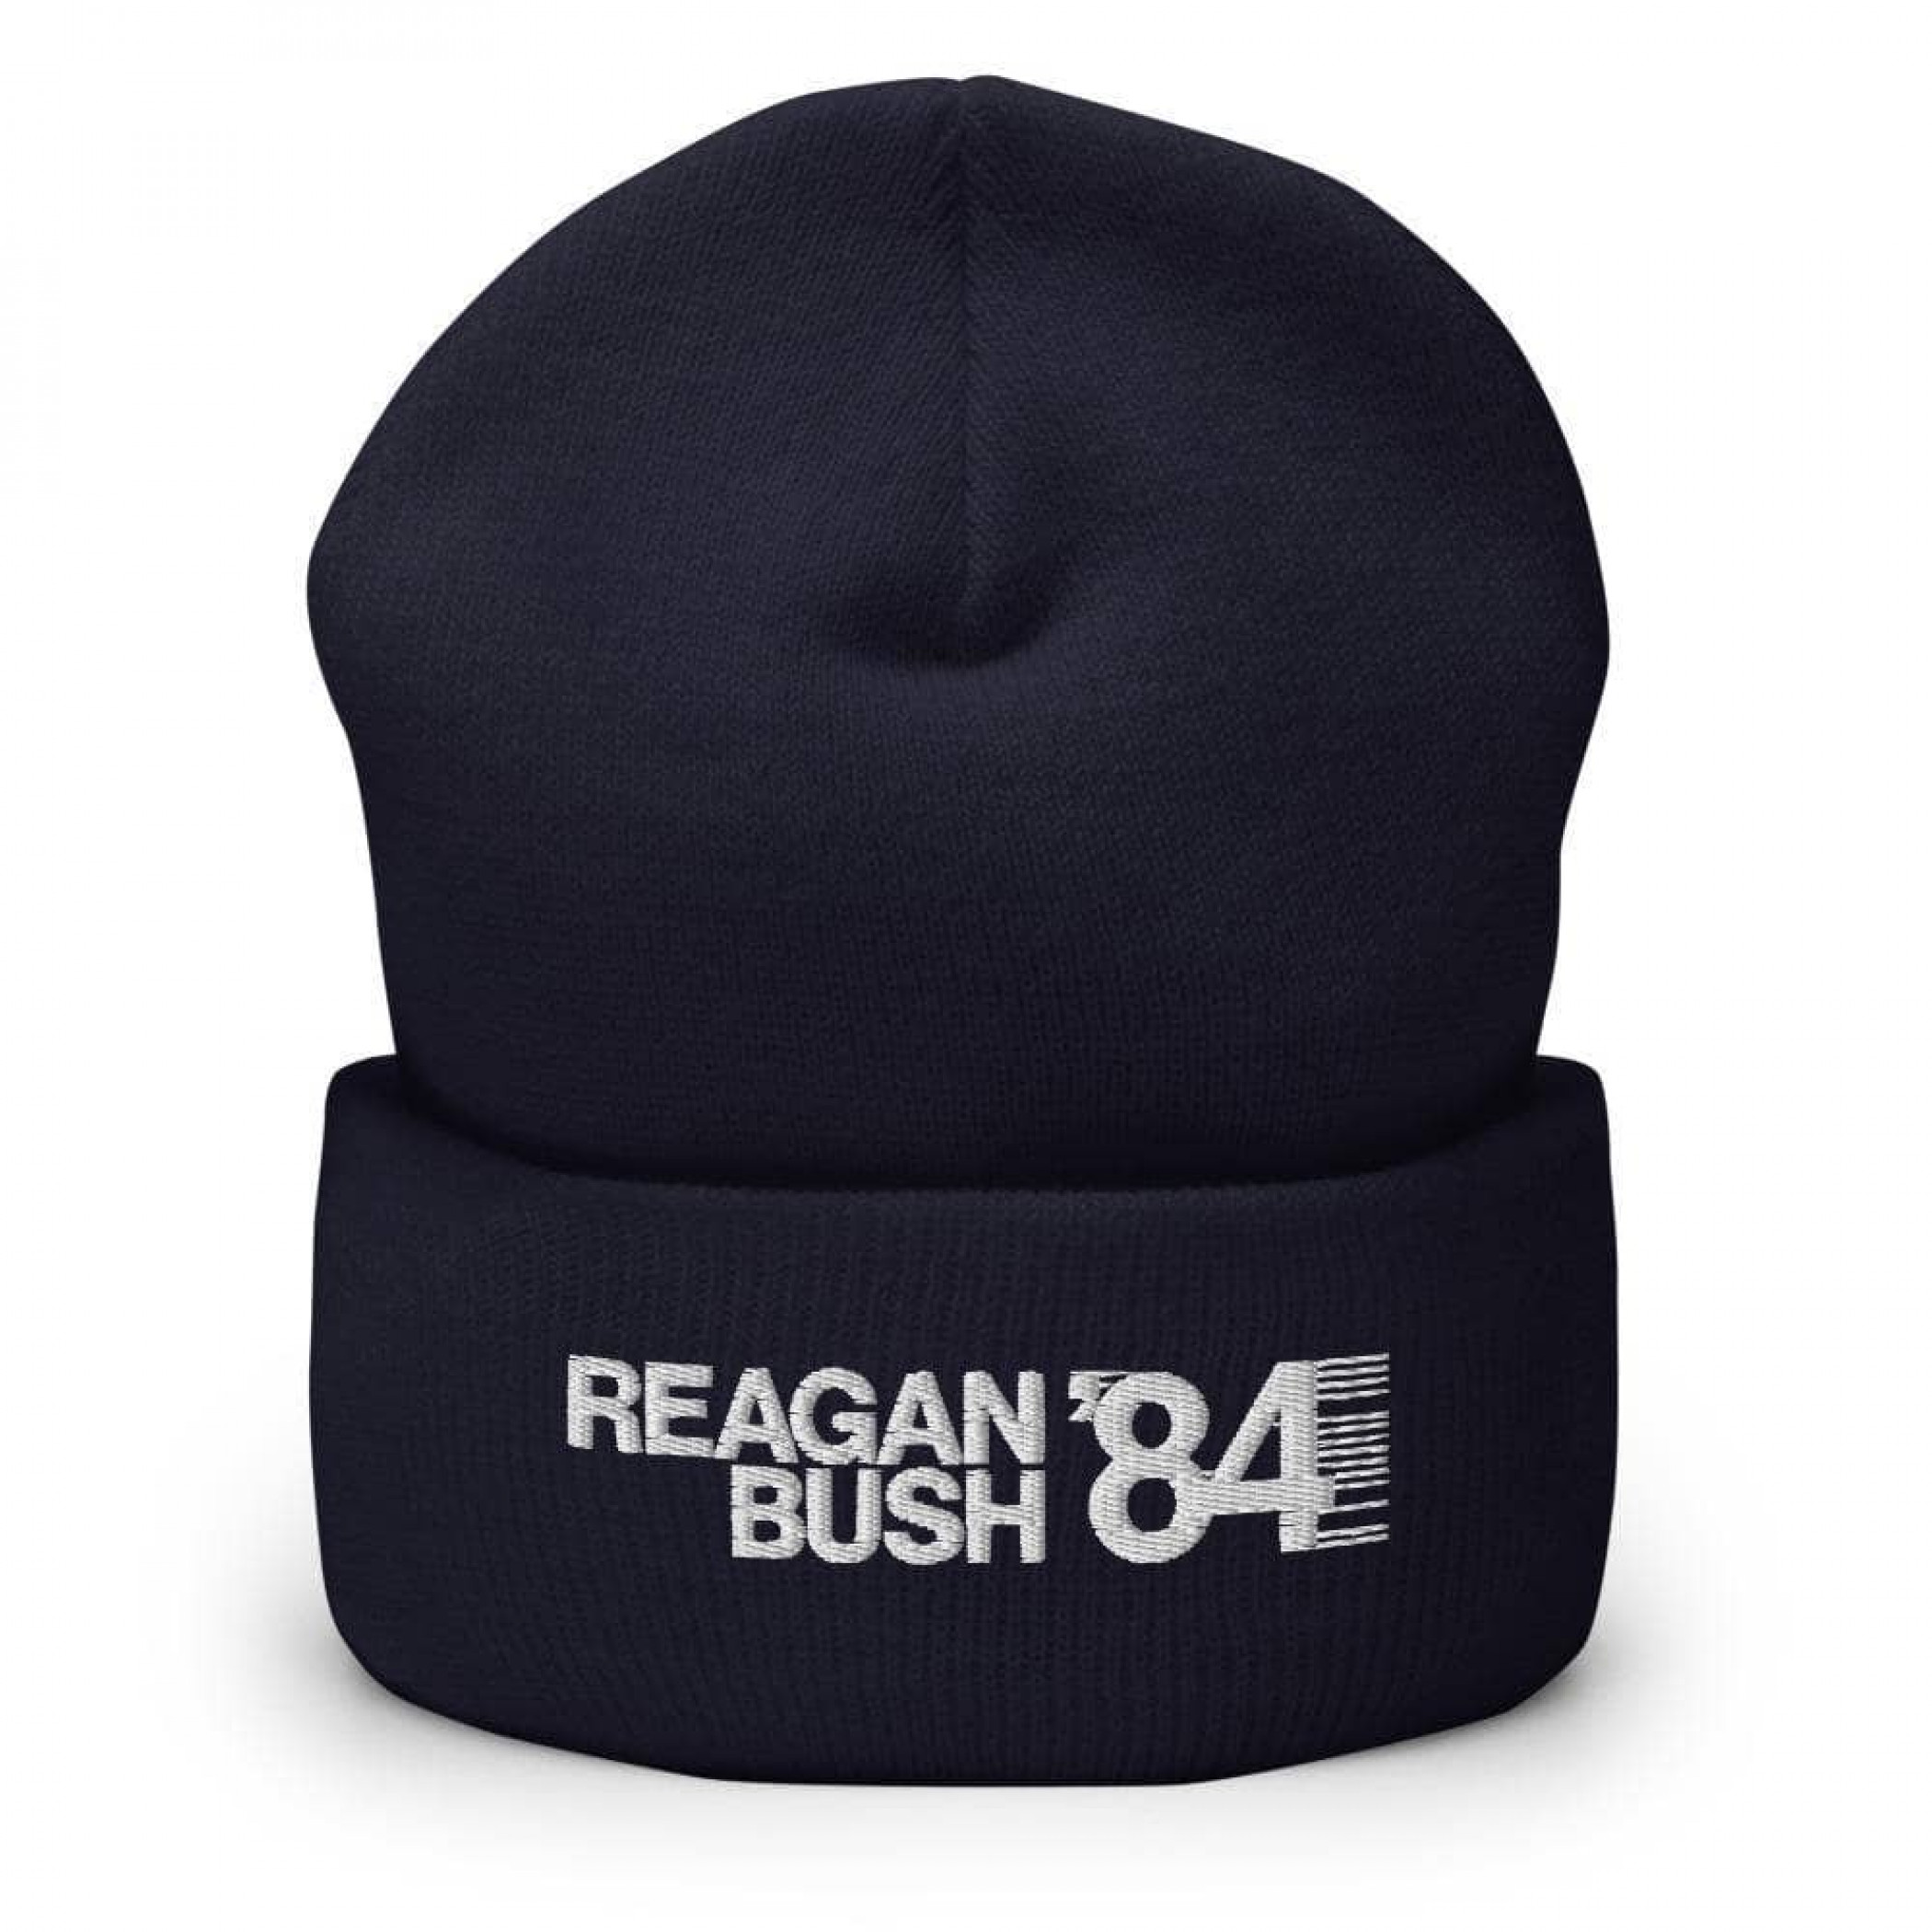 Reagan Bush '84 v2 Beanie